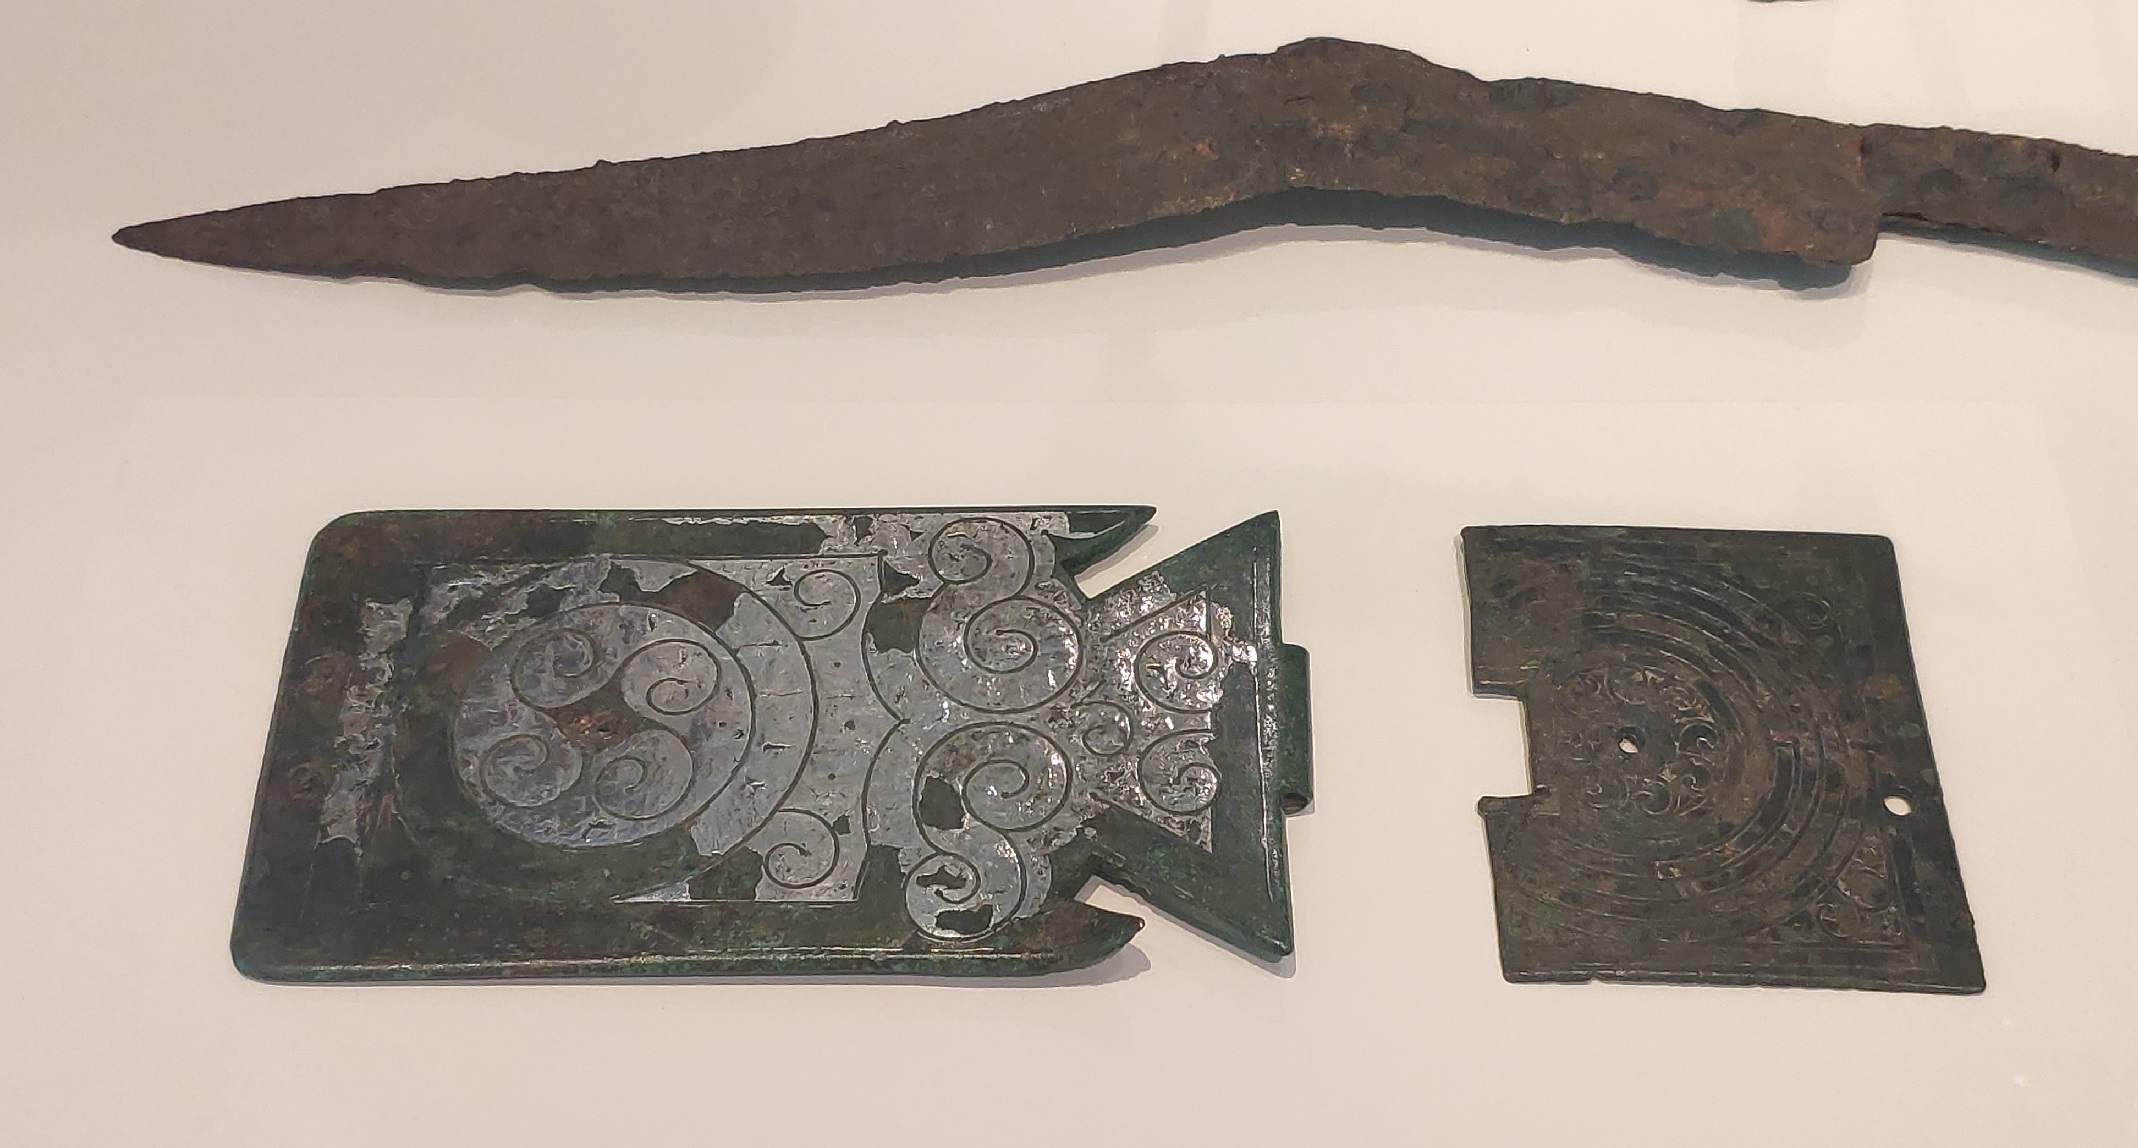 Broches de cinturón y cuchillo sacrificial (Paredes de Nava, Palencia)